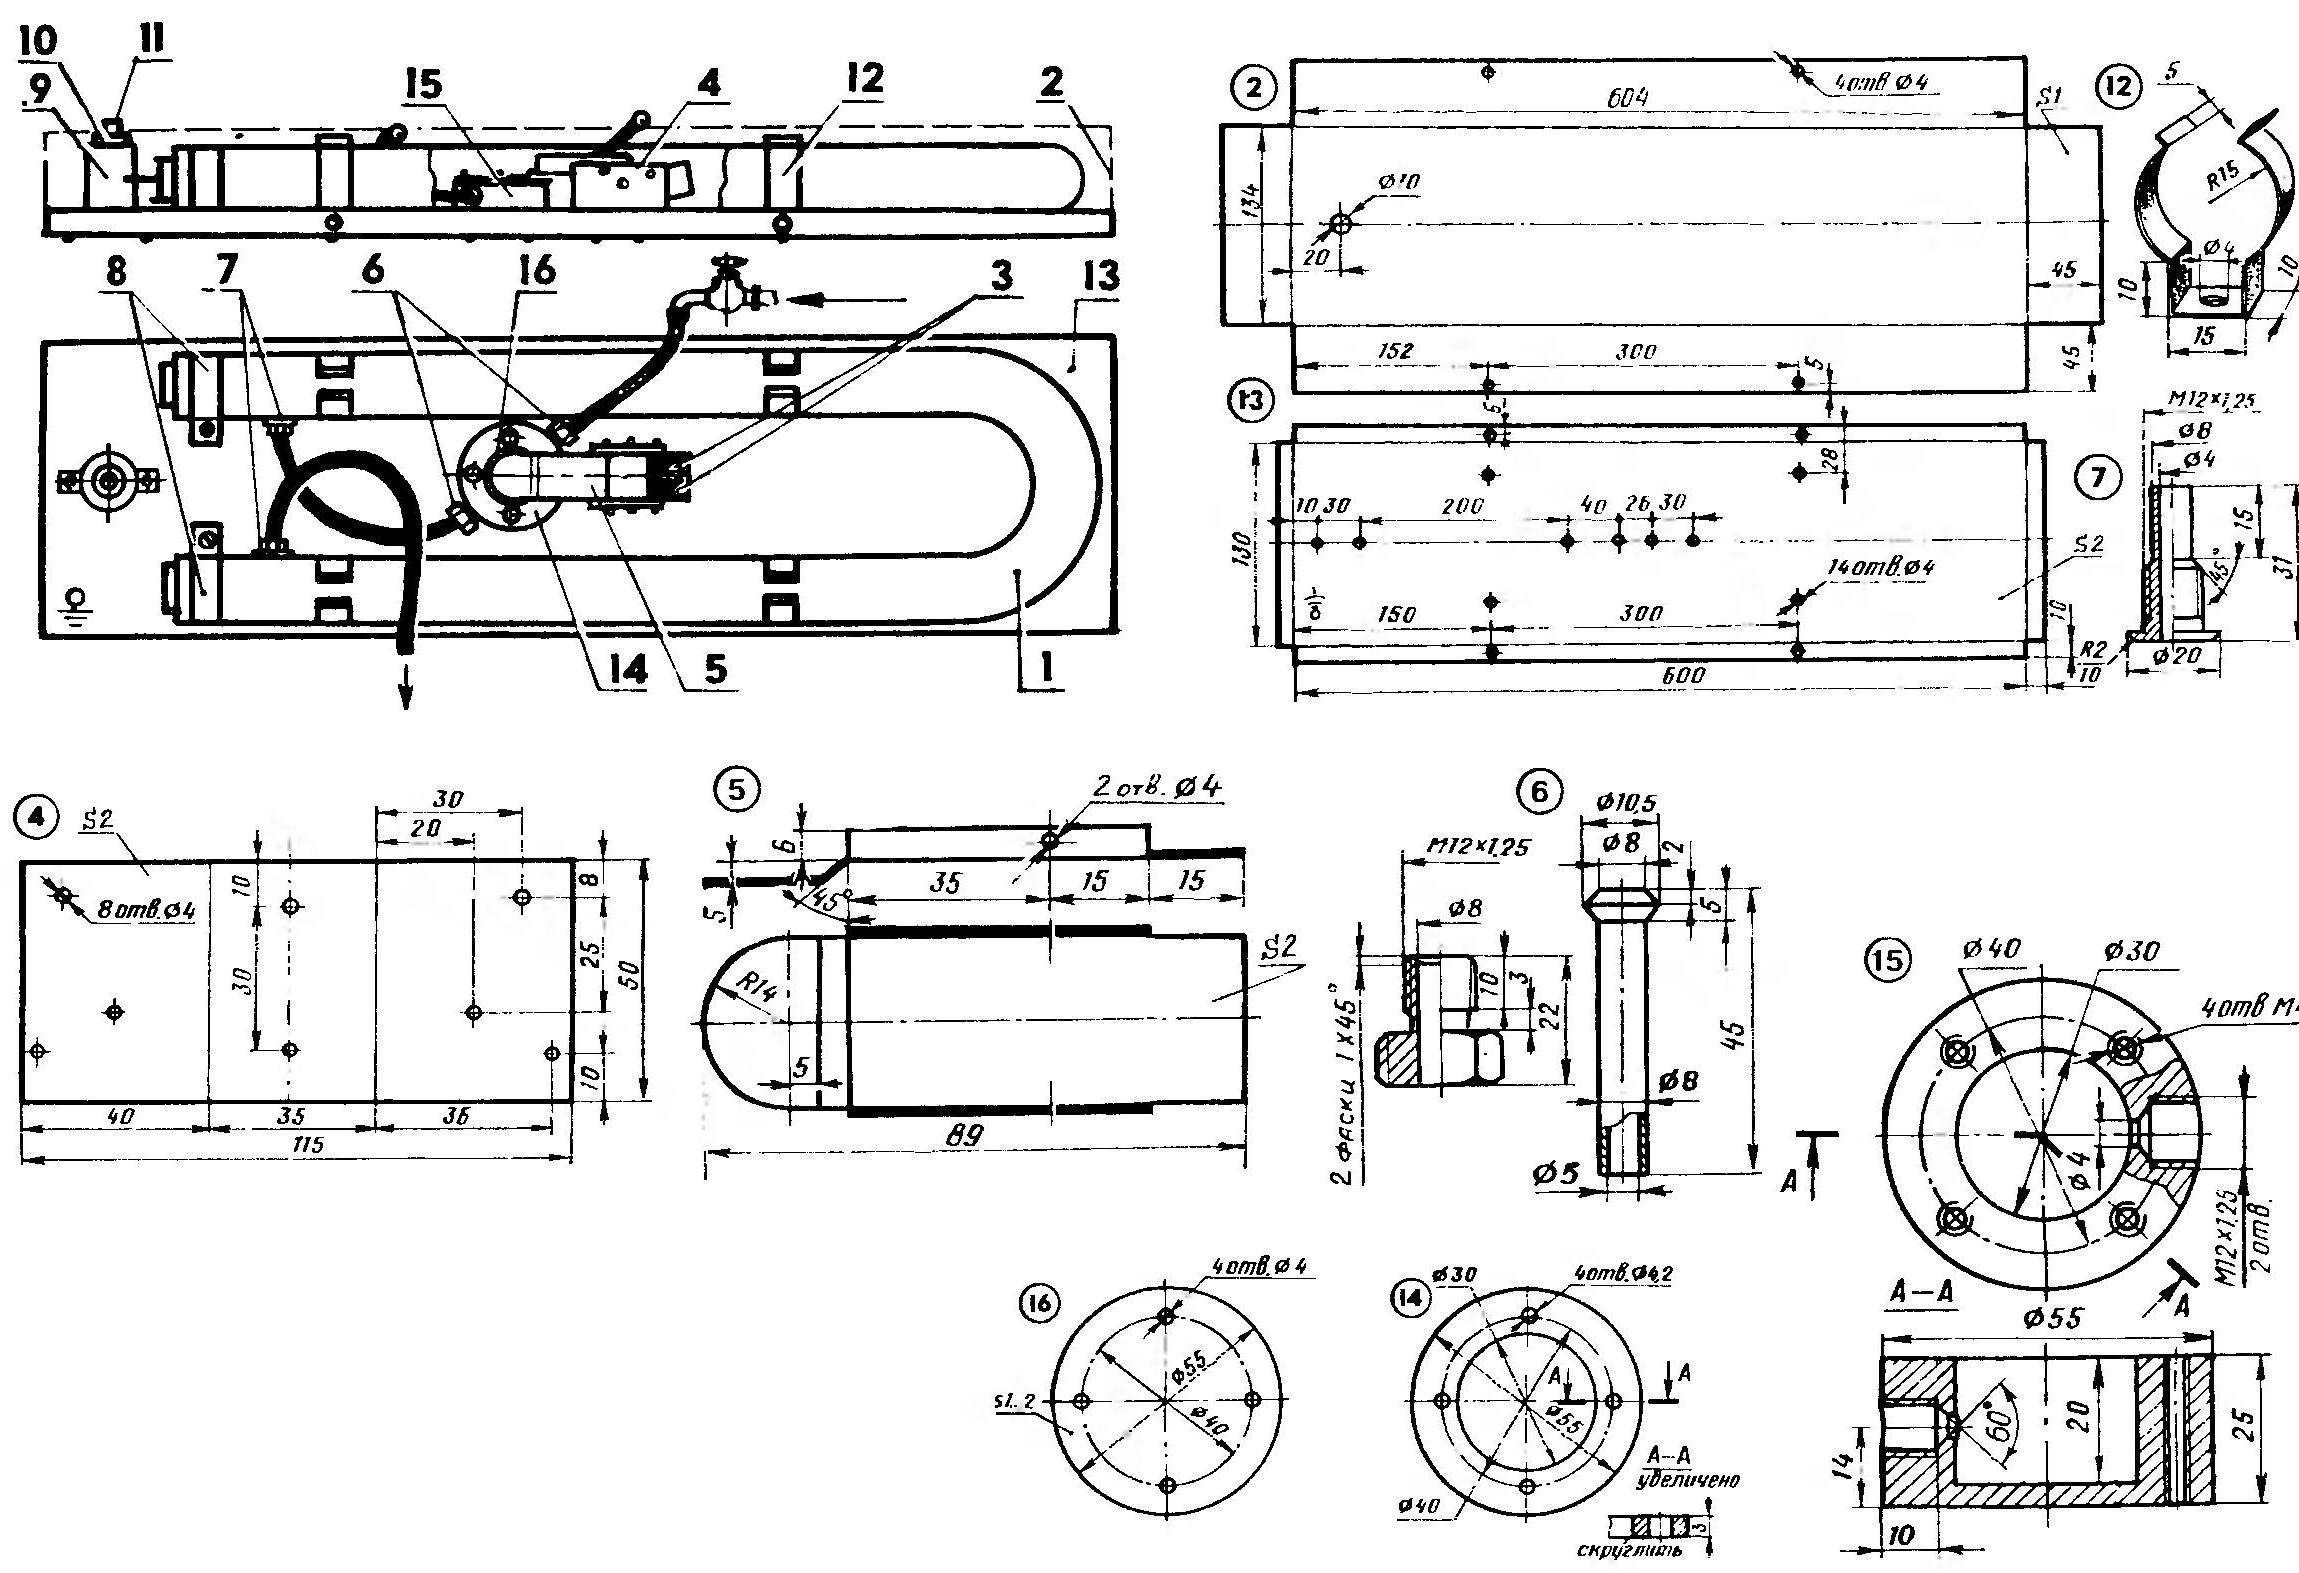 Fig. 1. Design of boiler